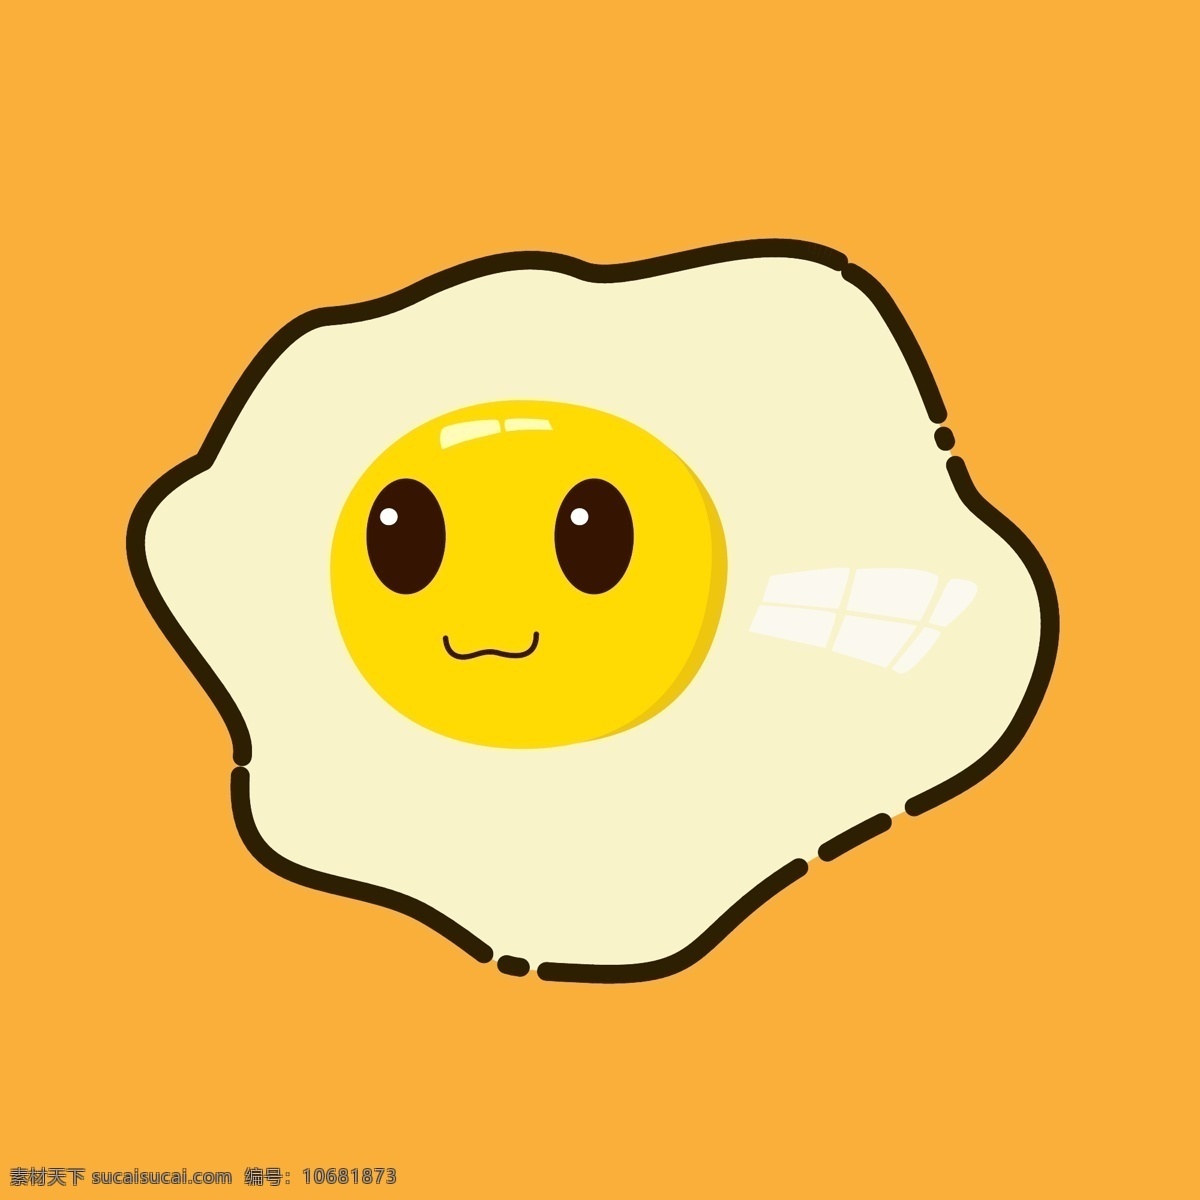 煎蛋卡通 煎蛋 鸡蛋 卡通 形象 吉祥物 黄色